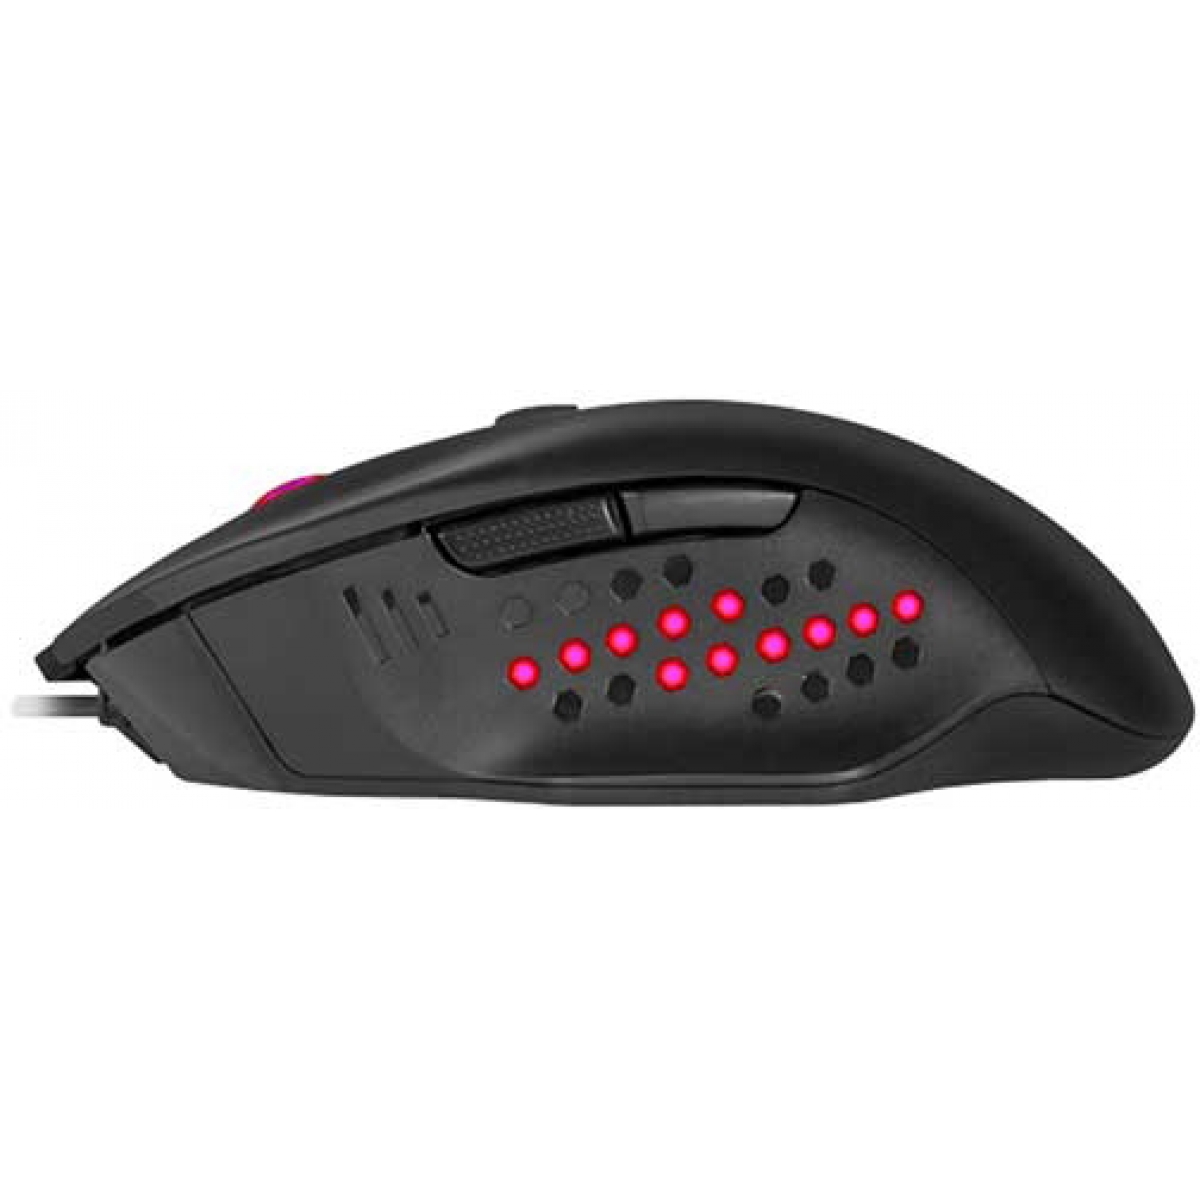 Mouse Gamer Redragon Gainer M610, 3200 DPI, 6 Botões, Black